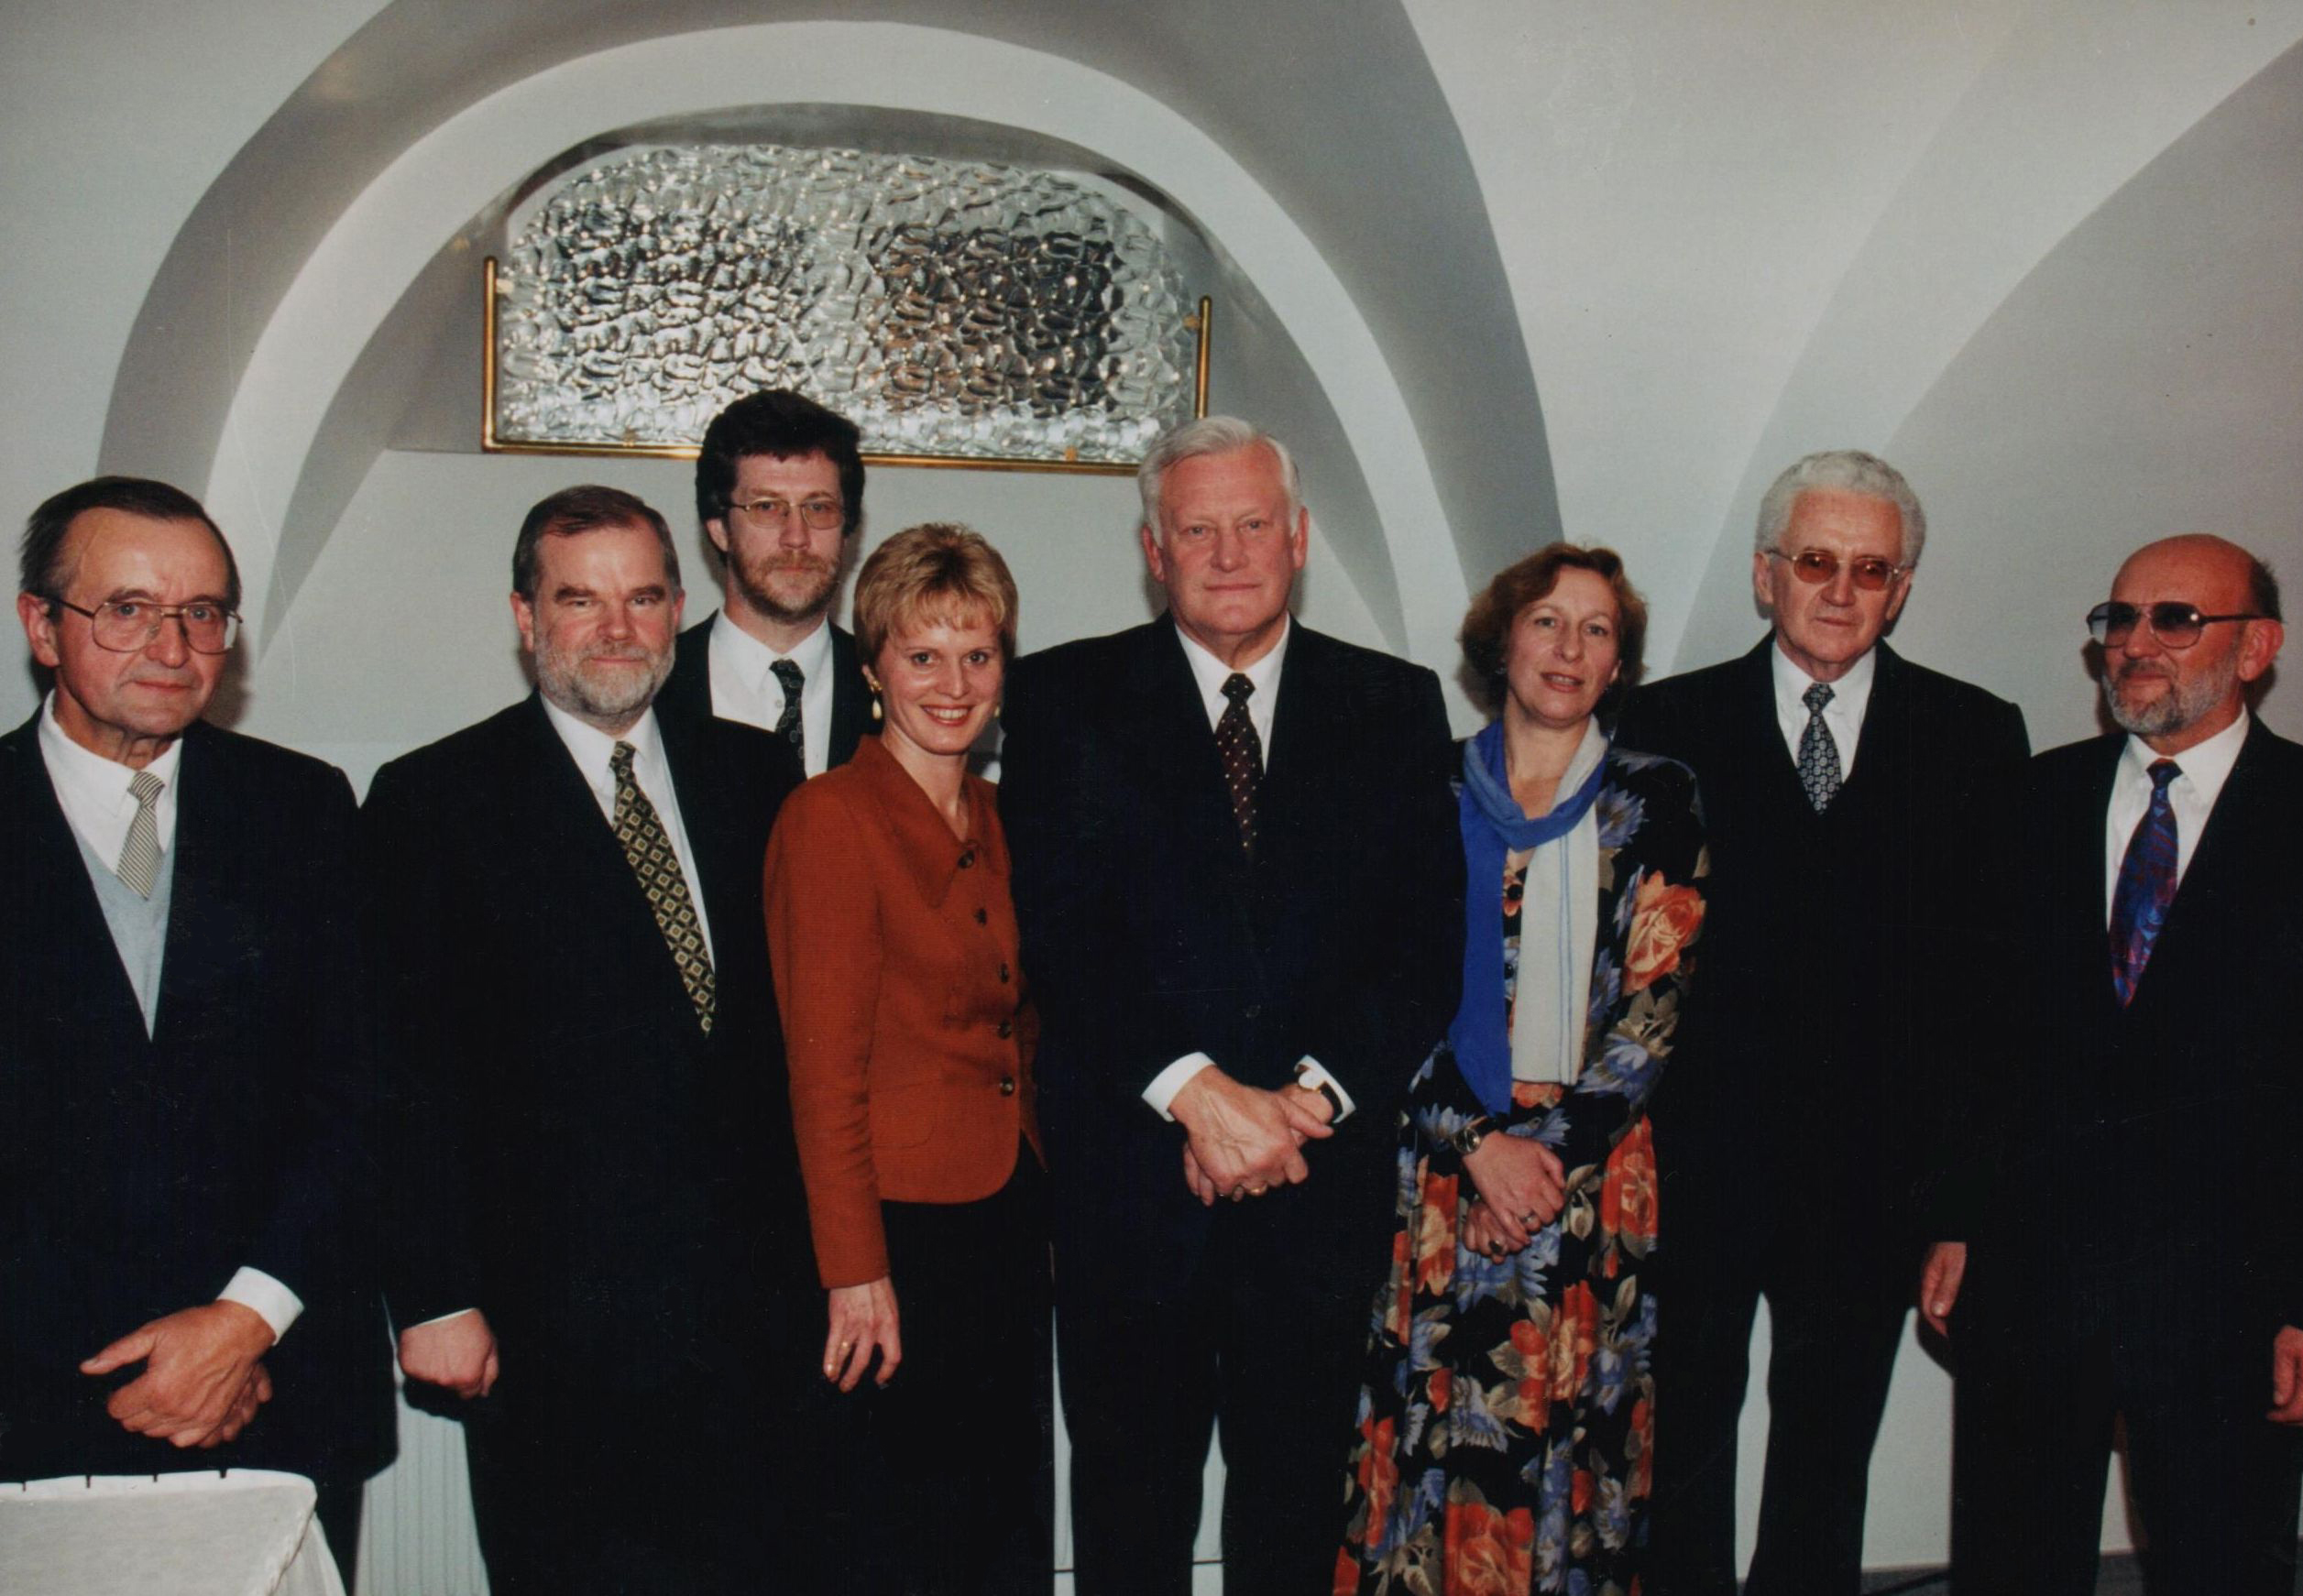 1997 m. rugsėjo mėn. LR Prezidentas A. Brazauskas pakvietė G. Ilgūną dirbti patarėju istorijos ir kultūros klausimais. Prezidentas su patarėjais ir referentais švietimo, mokslo ir kultūros klausimais. Iš kairės: R. Gudaitis, A. Matulionis, A. Vaškevičius, E. Jalnonienė, LR Prezidentas A. Brazauskas, L. Žeruolytė, V. Gurauskas ir G. Ilgūnas. 1997 m. rugsėjo 22 d.